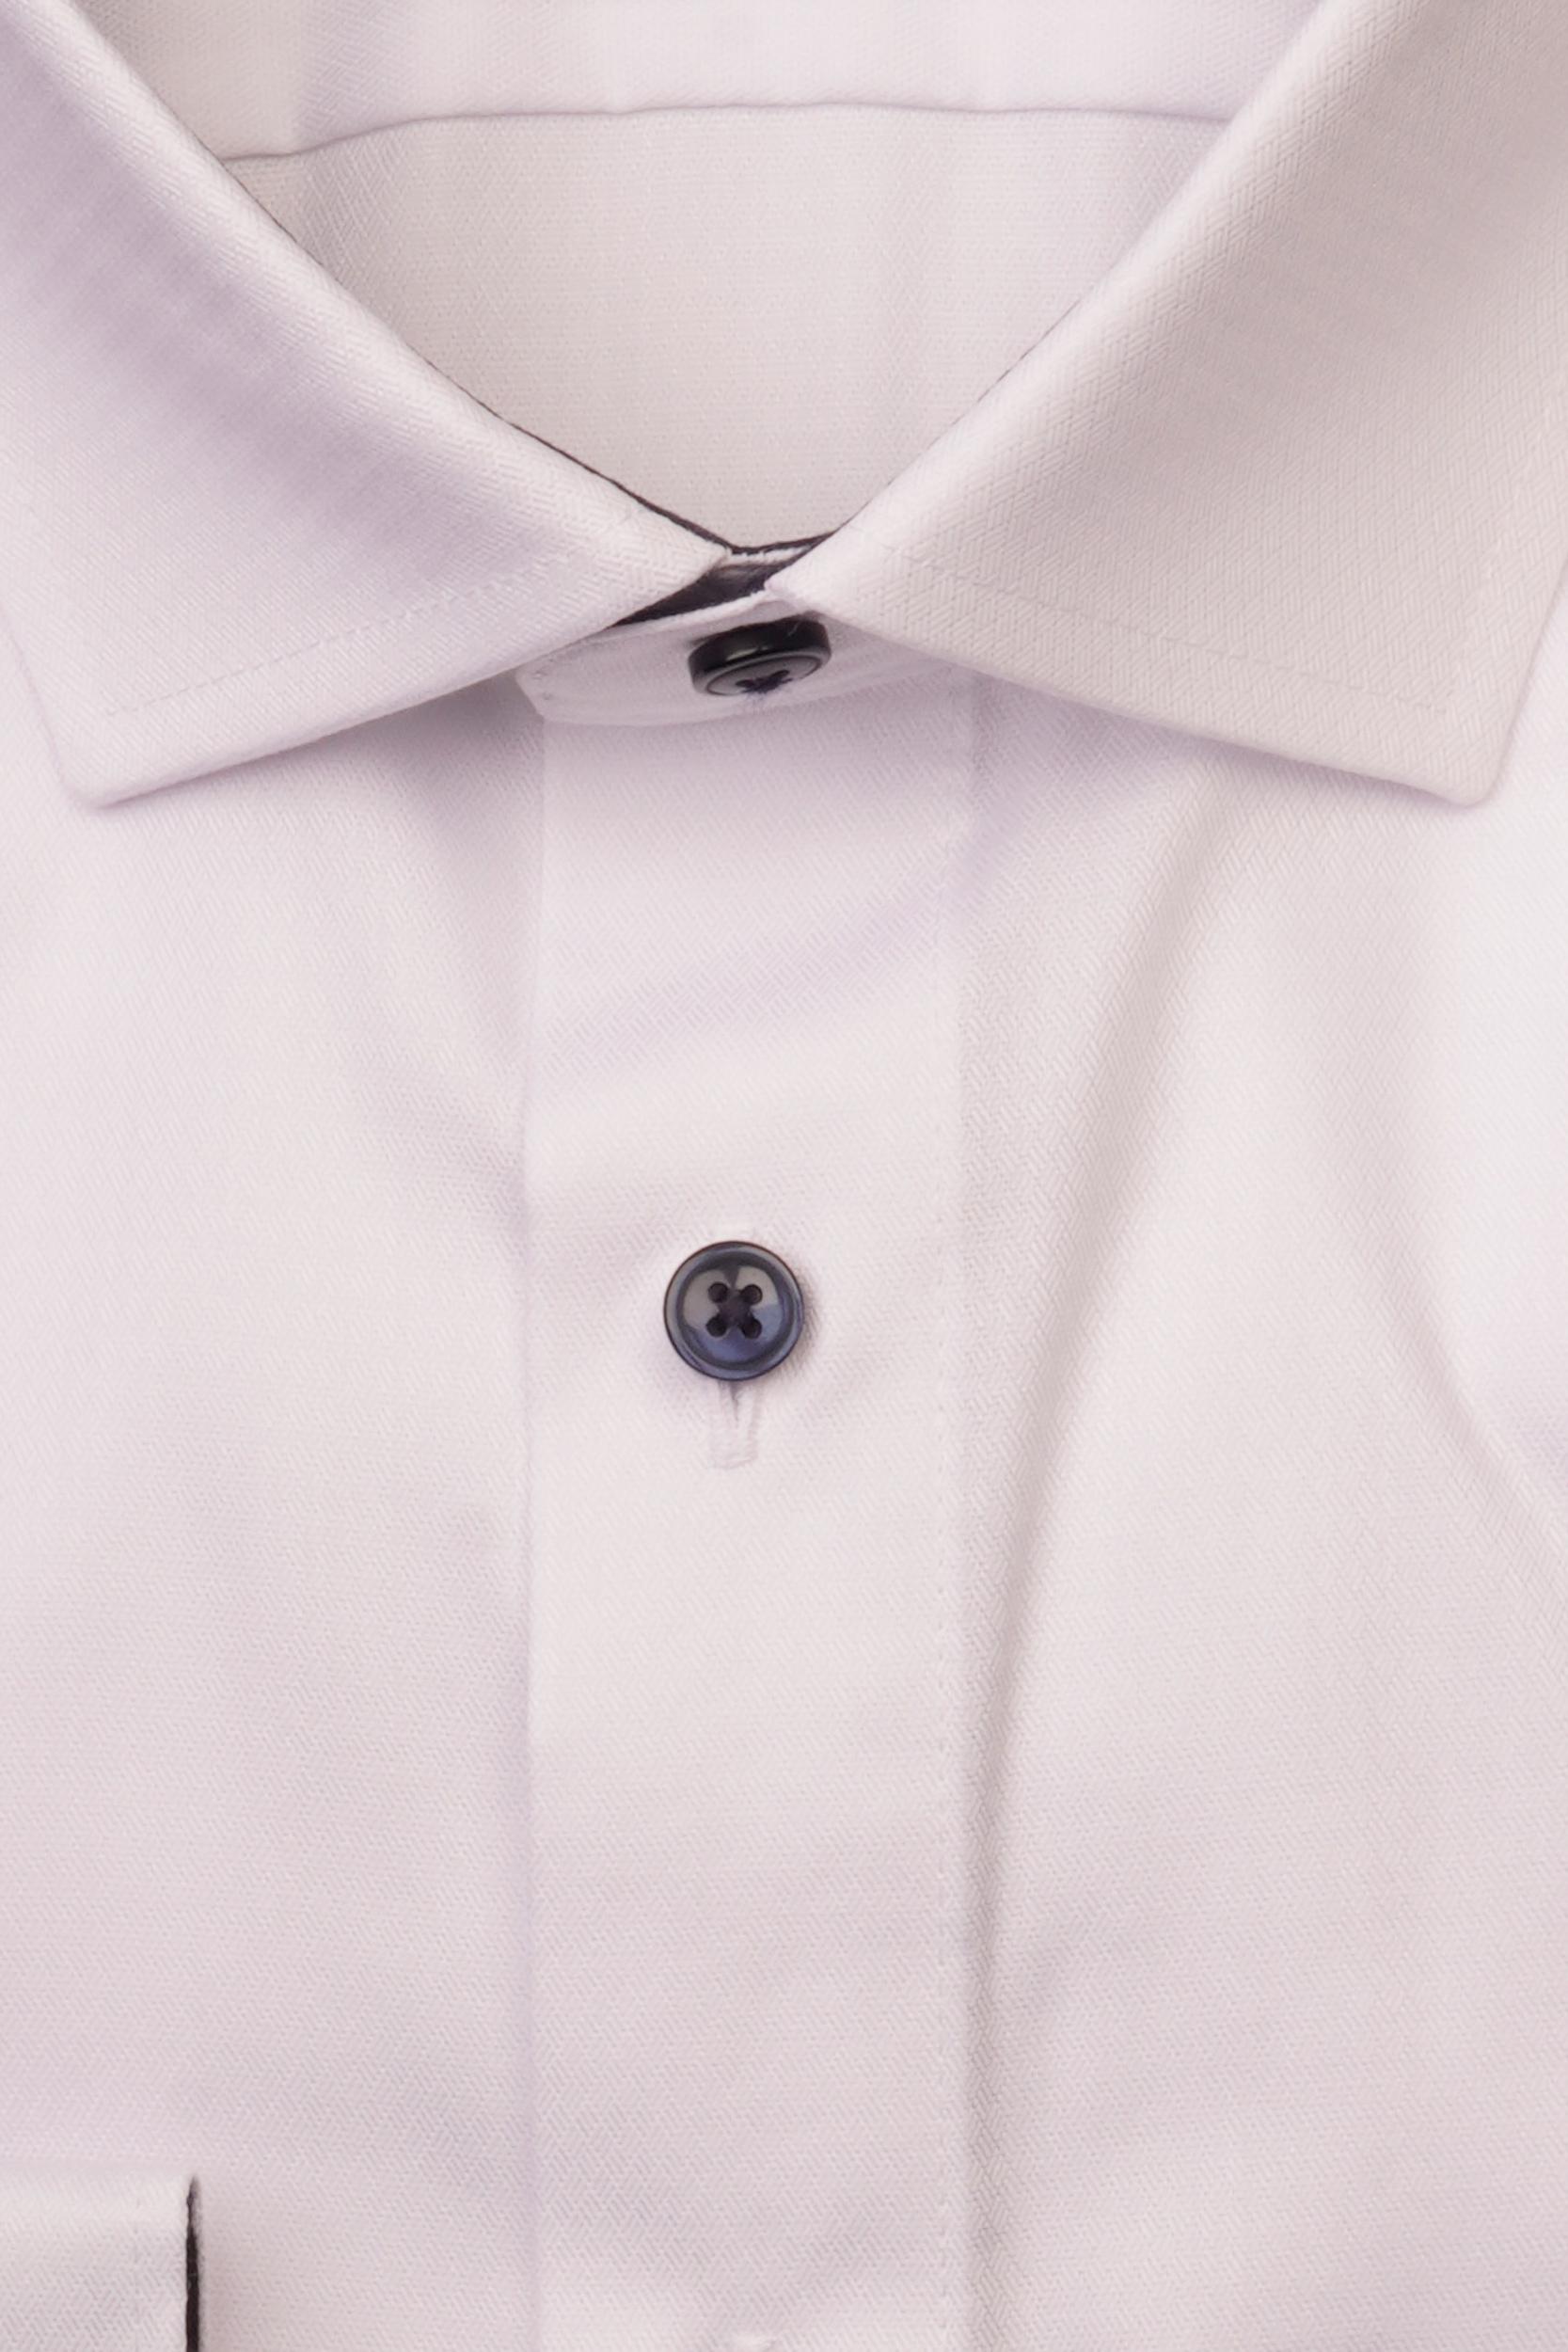 Olymp Overhemd extra lange mouw Wit 1262/49 Hemden 126249/00